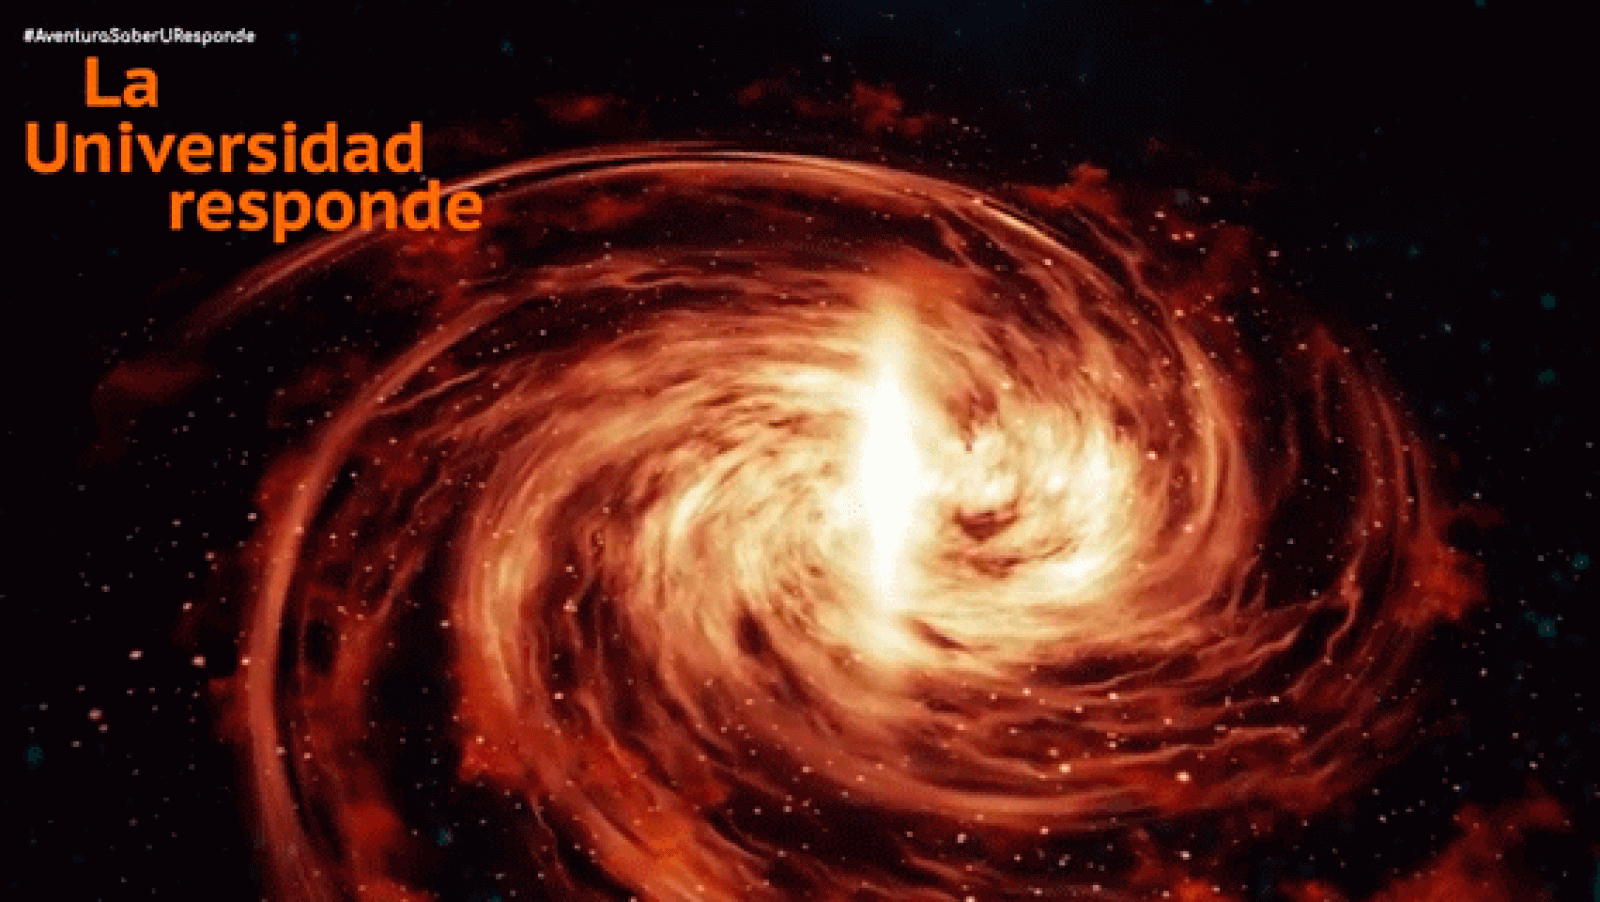 La aventura del saber - ¿Qué es una galaxia espiral?